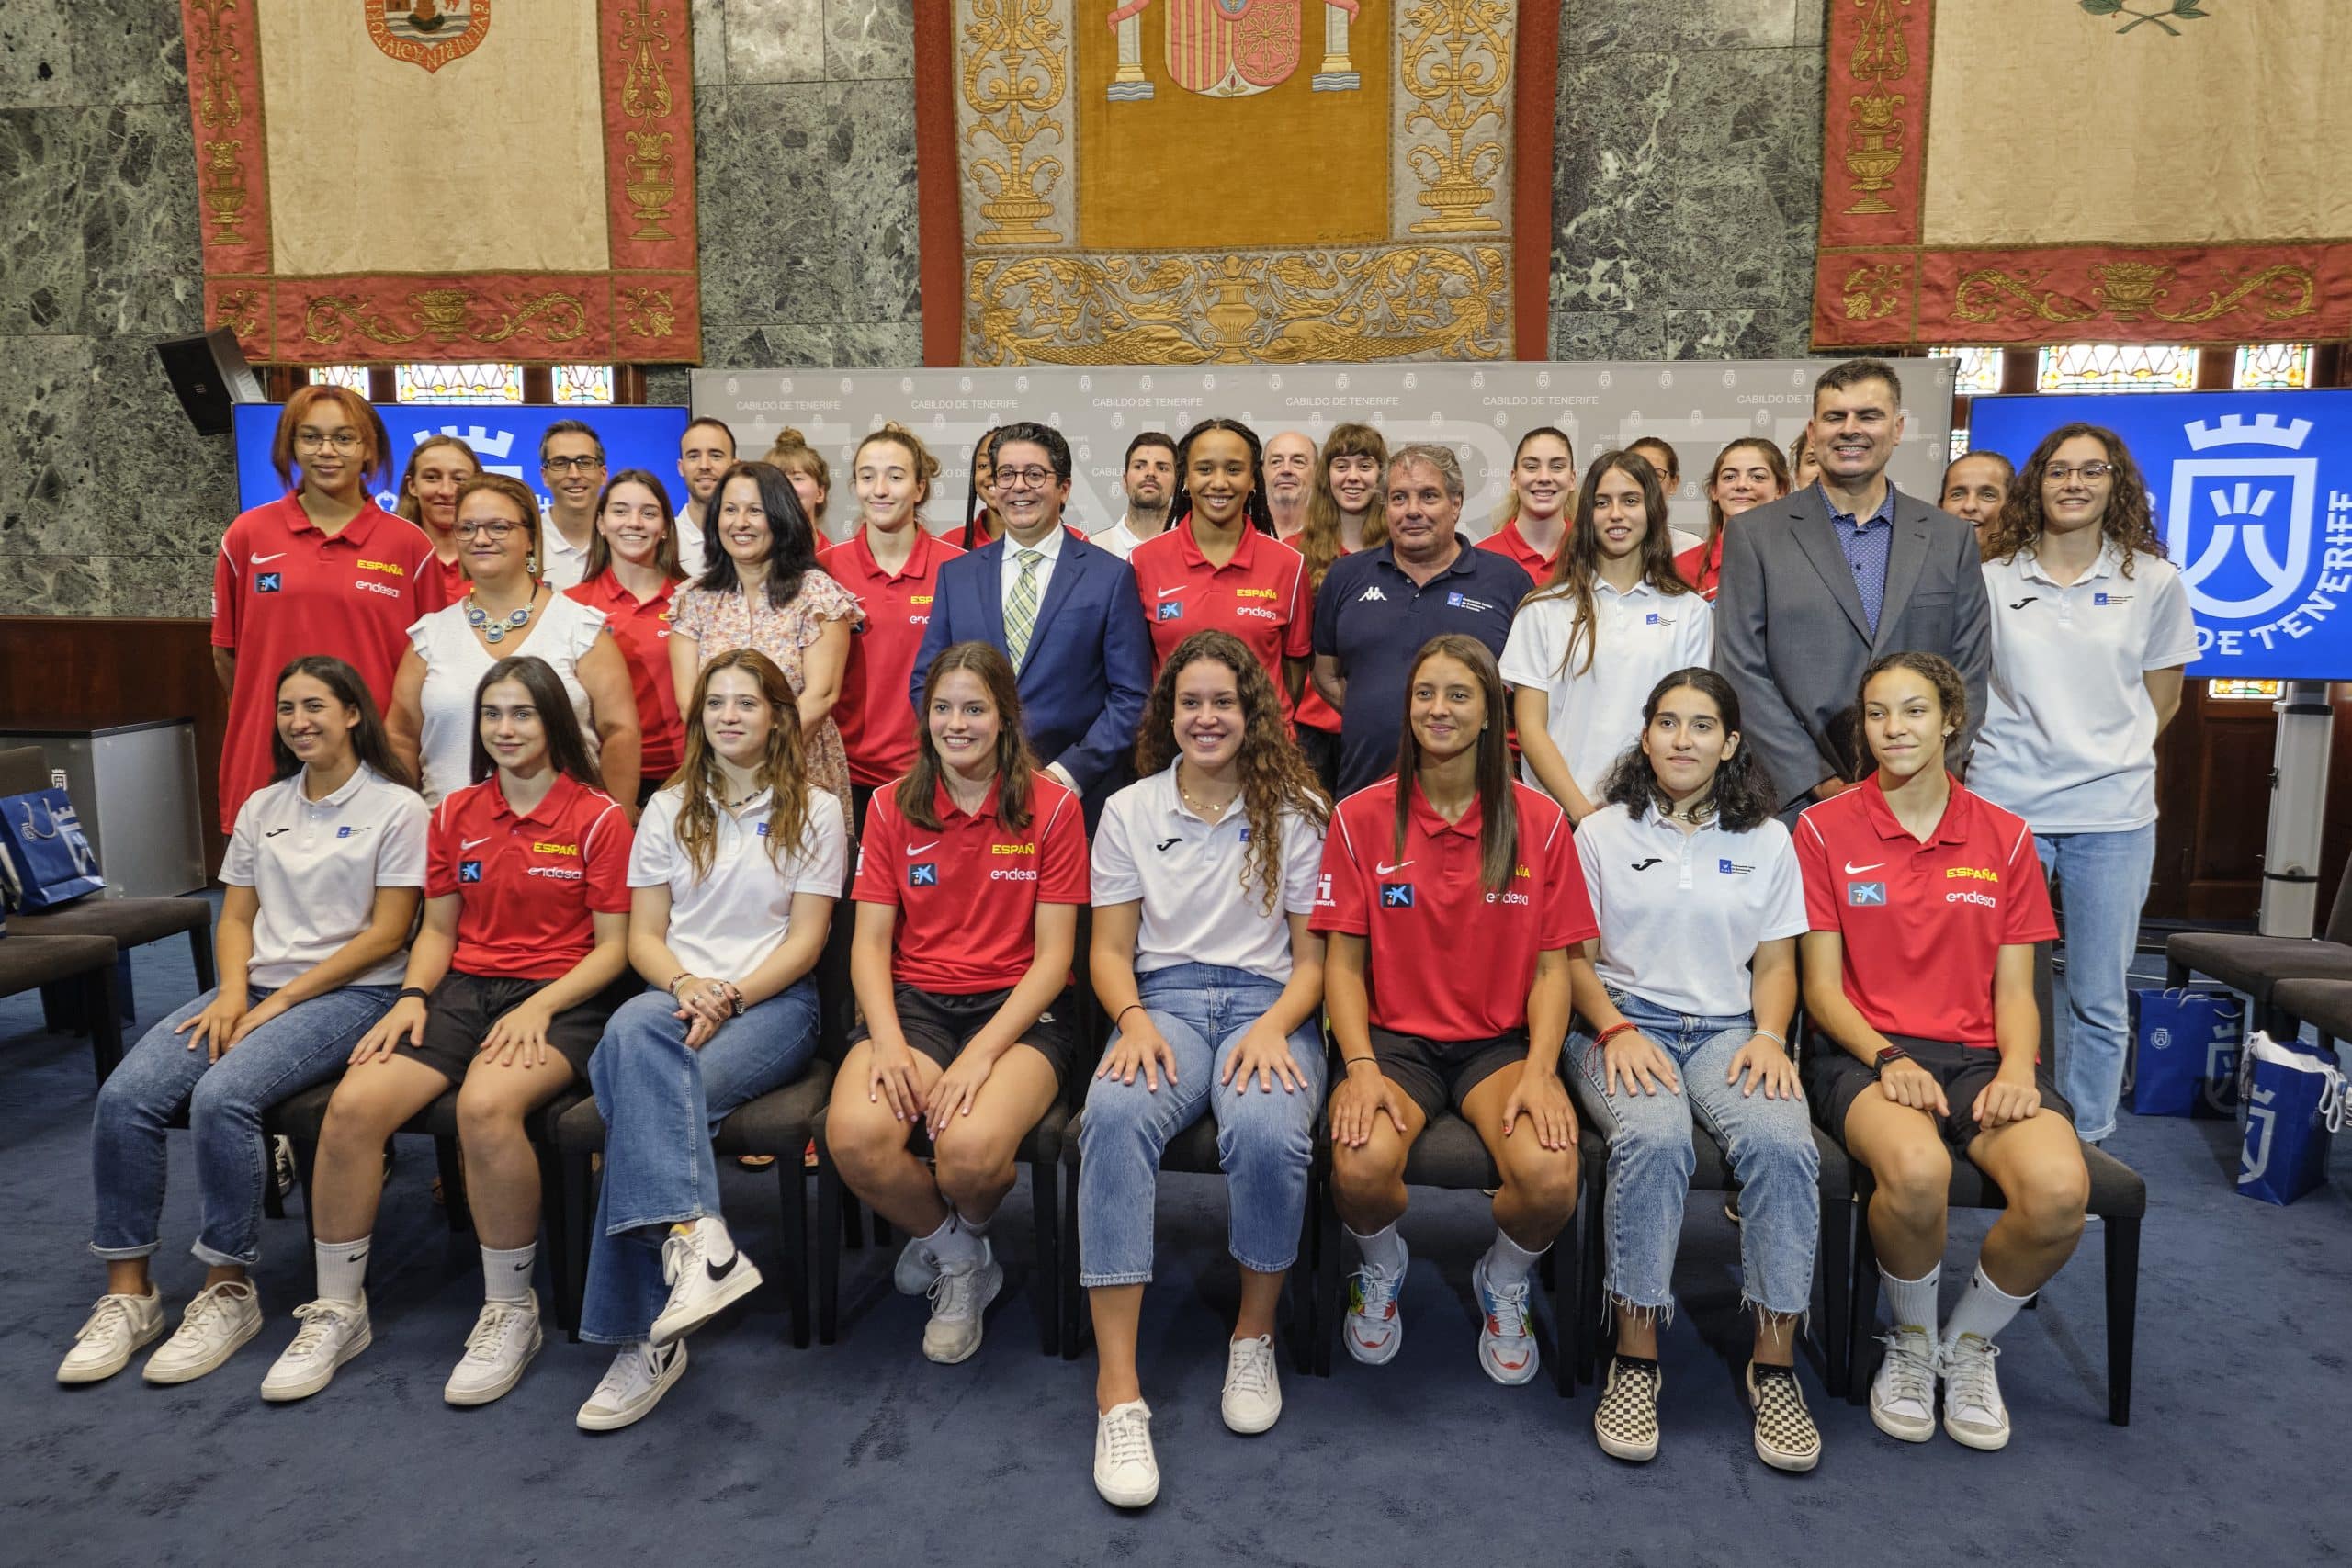 La selección española que participará en el Torneo de Baloncesto Femenino U18 visita el Cabildo